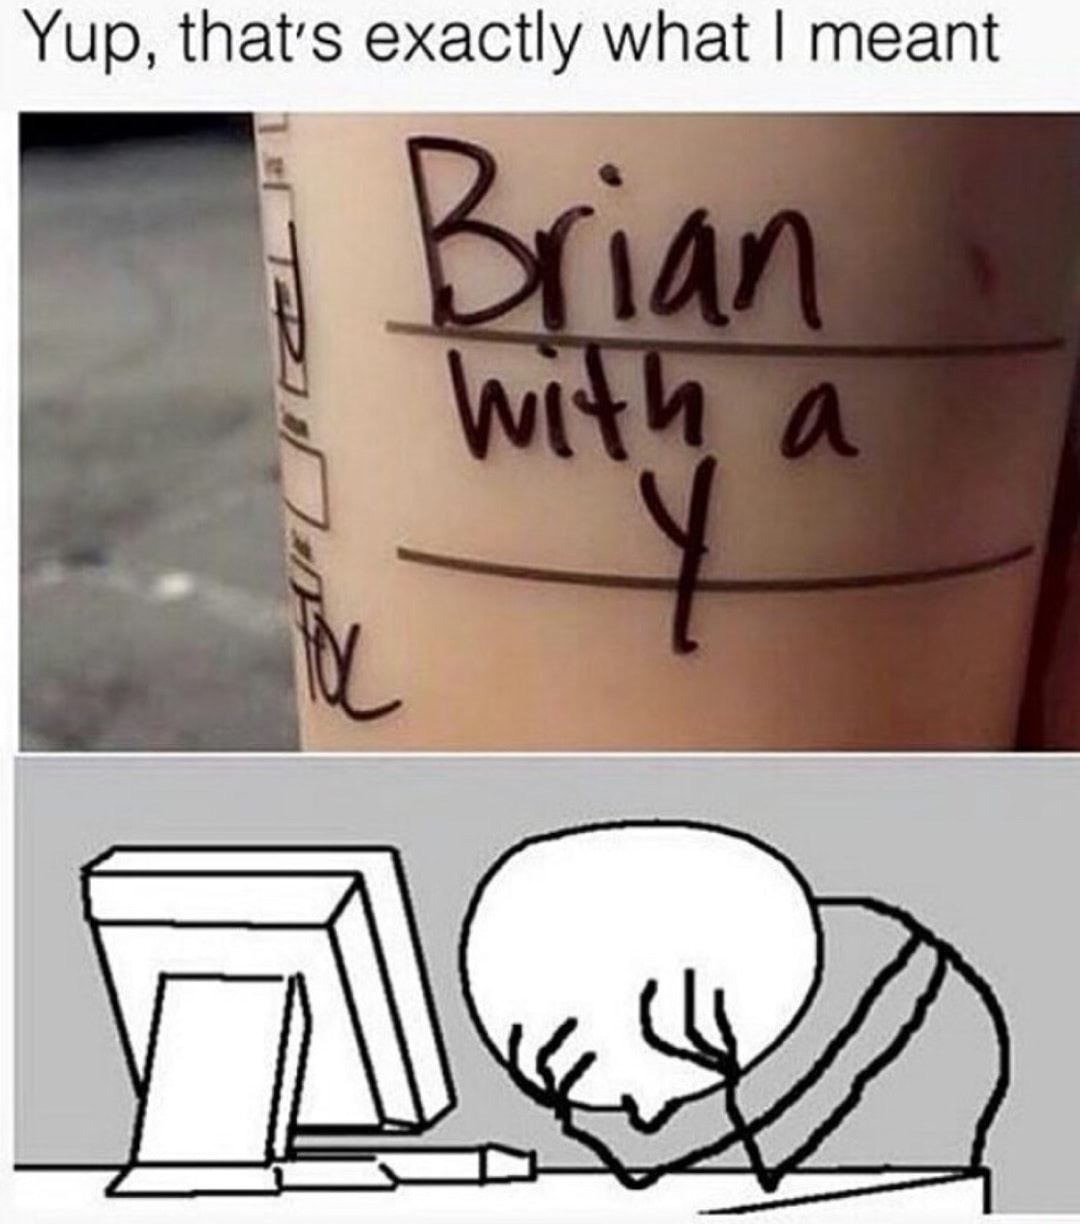 Brian with a Y on Starbucks mug